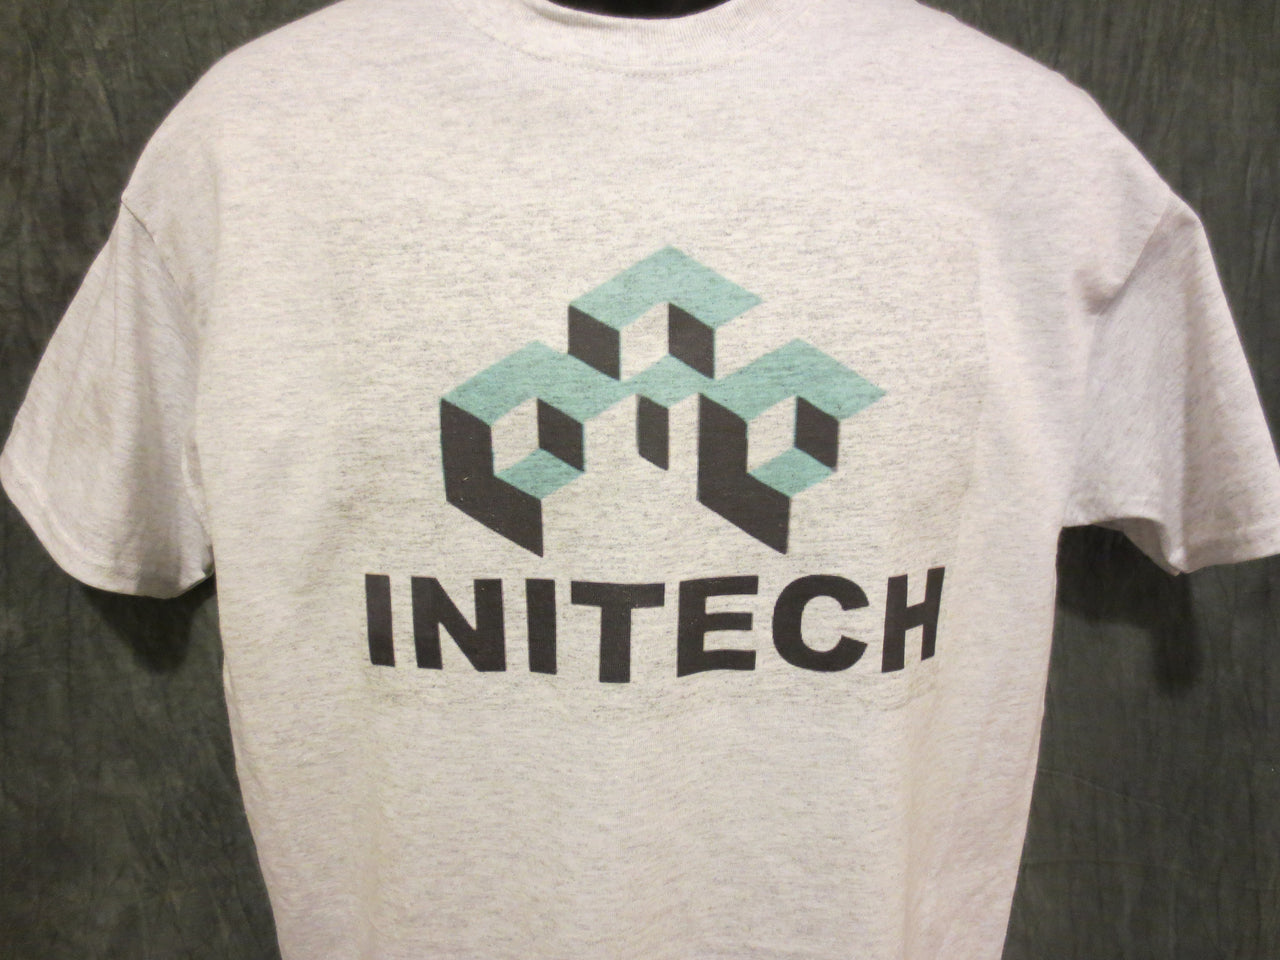 Office Space Initech Logo Tshirt - TshirtNow.net - 3